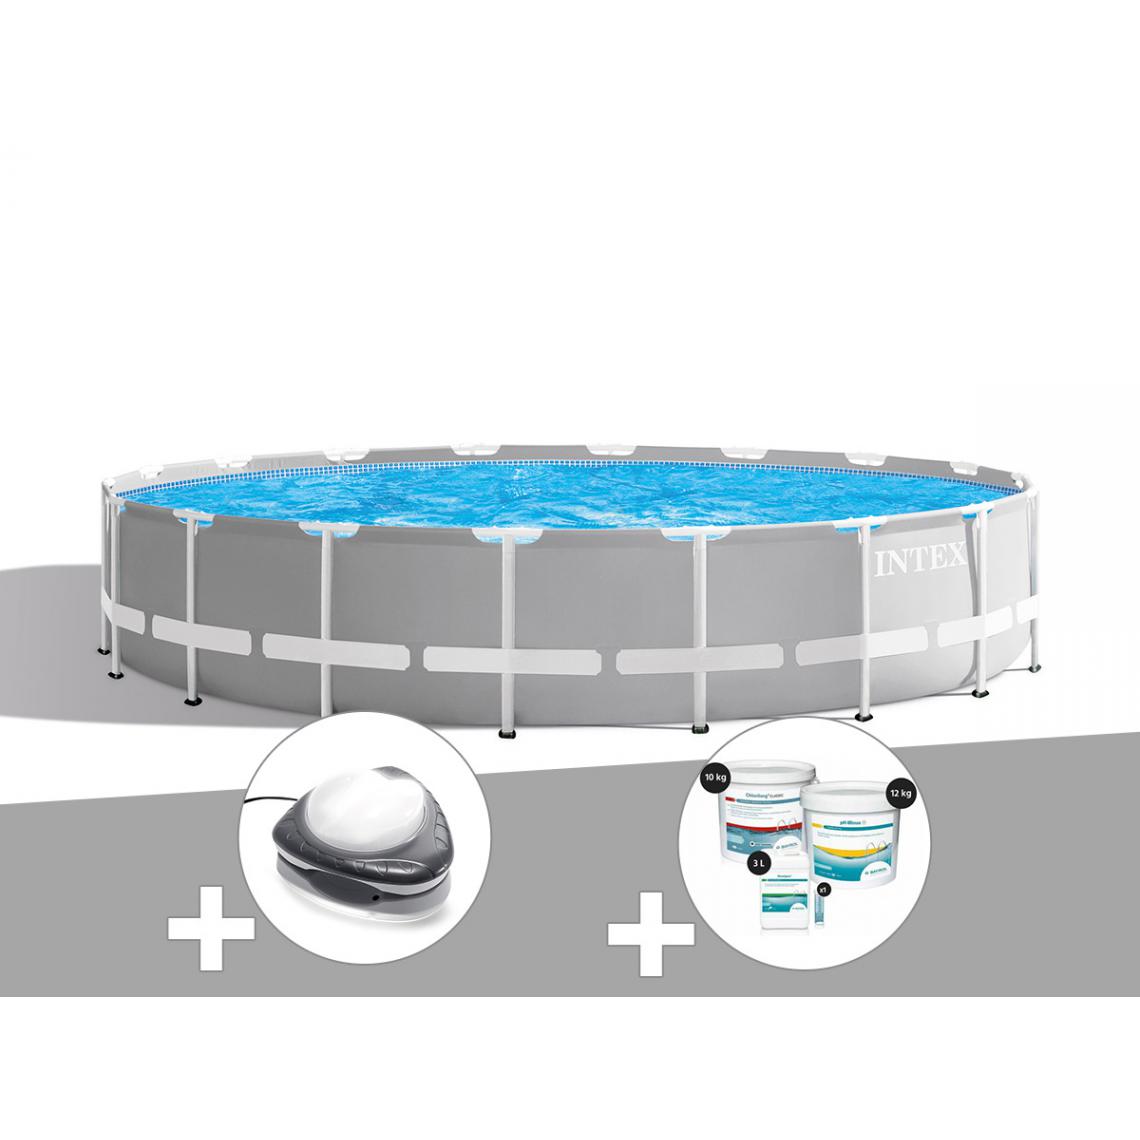 Intex - Kit piscine tubulaire Intex Prism Frame ronde 6,10 x 1,32 m + Spot + Kit de traitement au chlore - Piscine Tubulaire